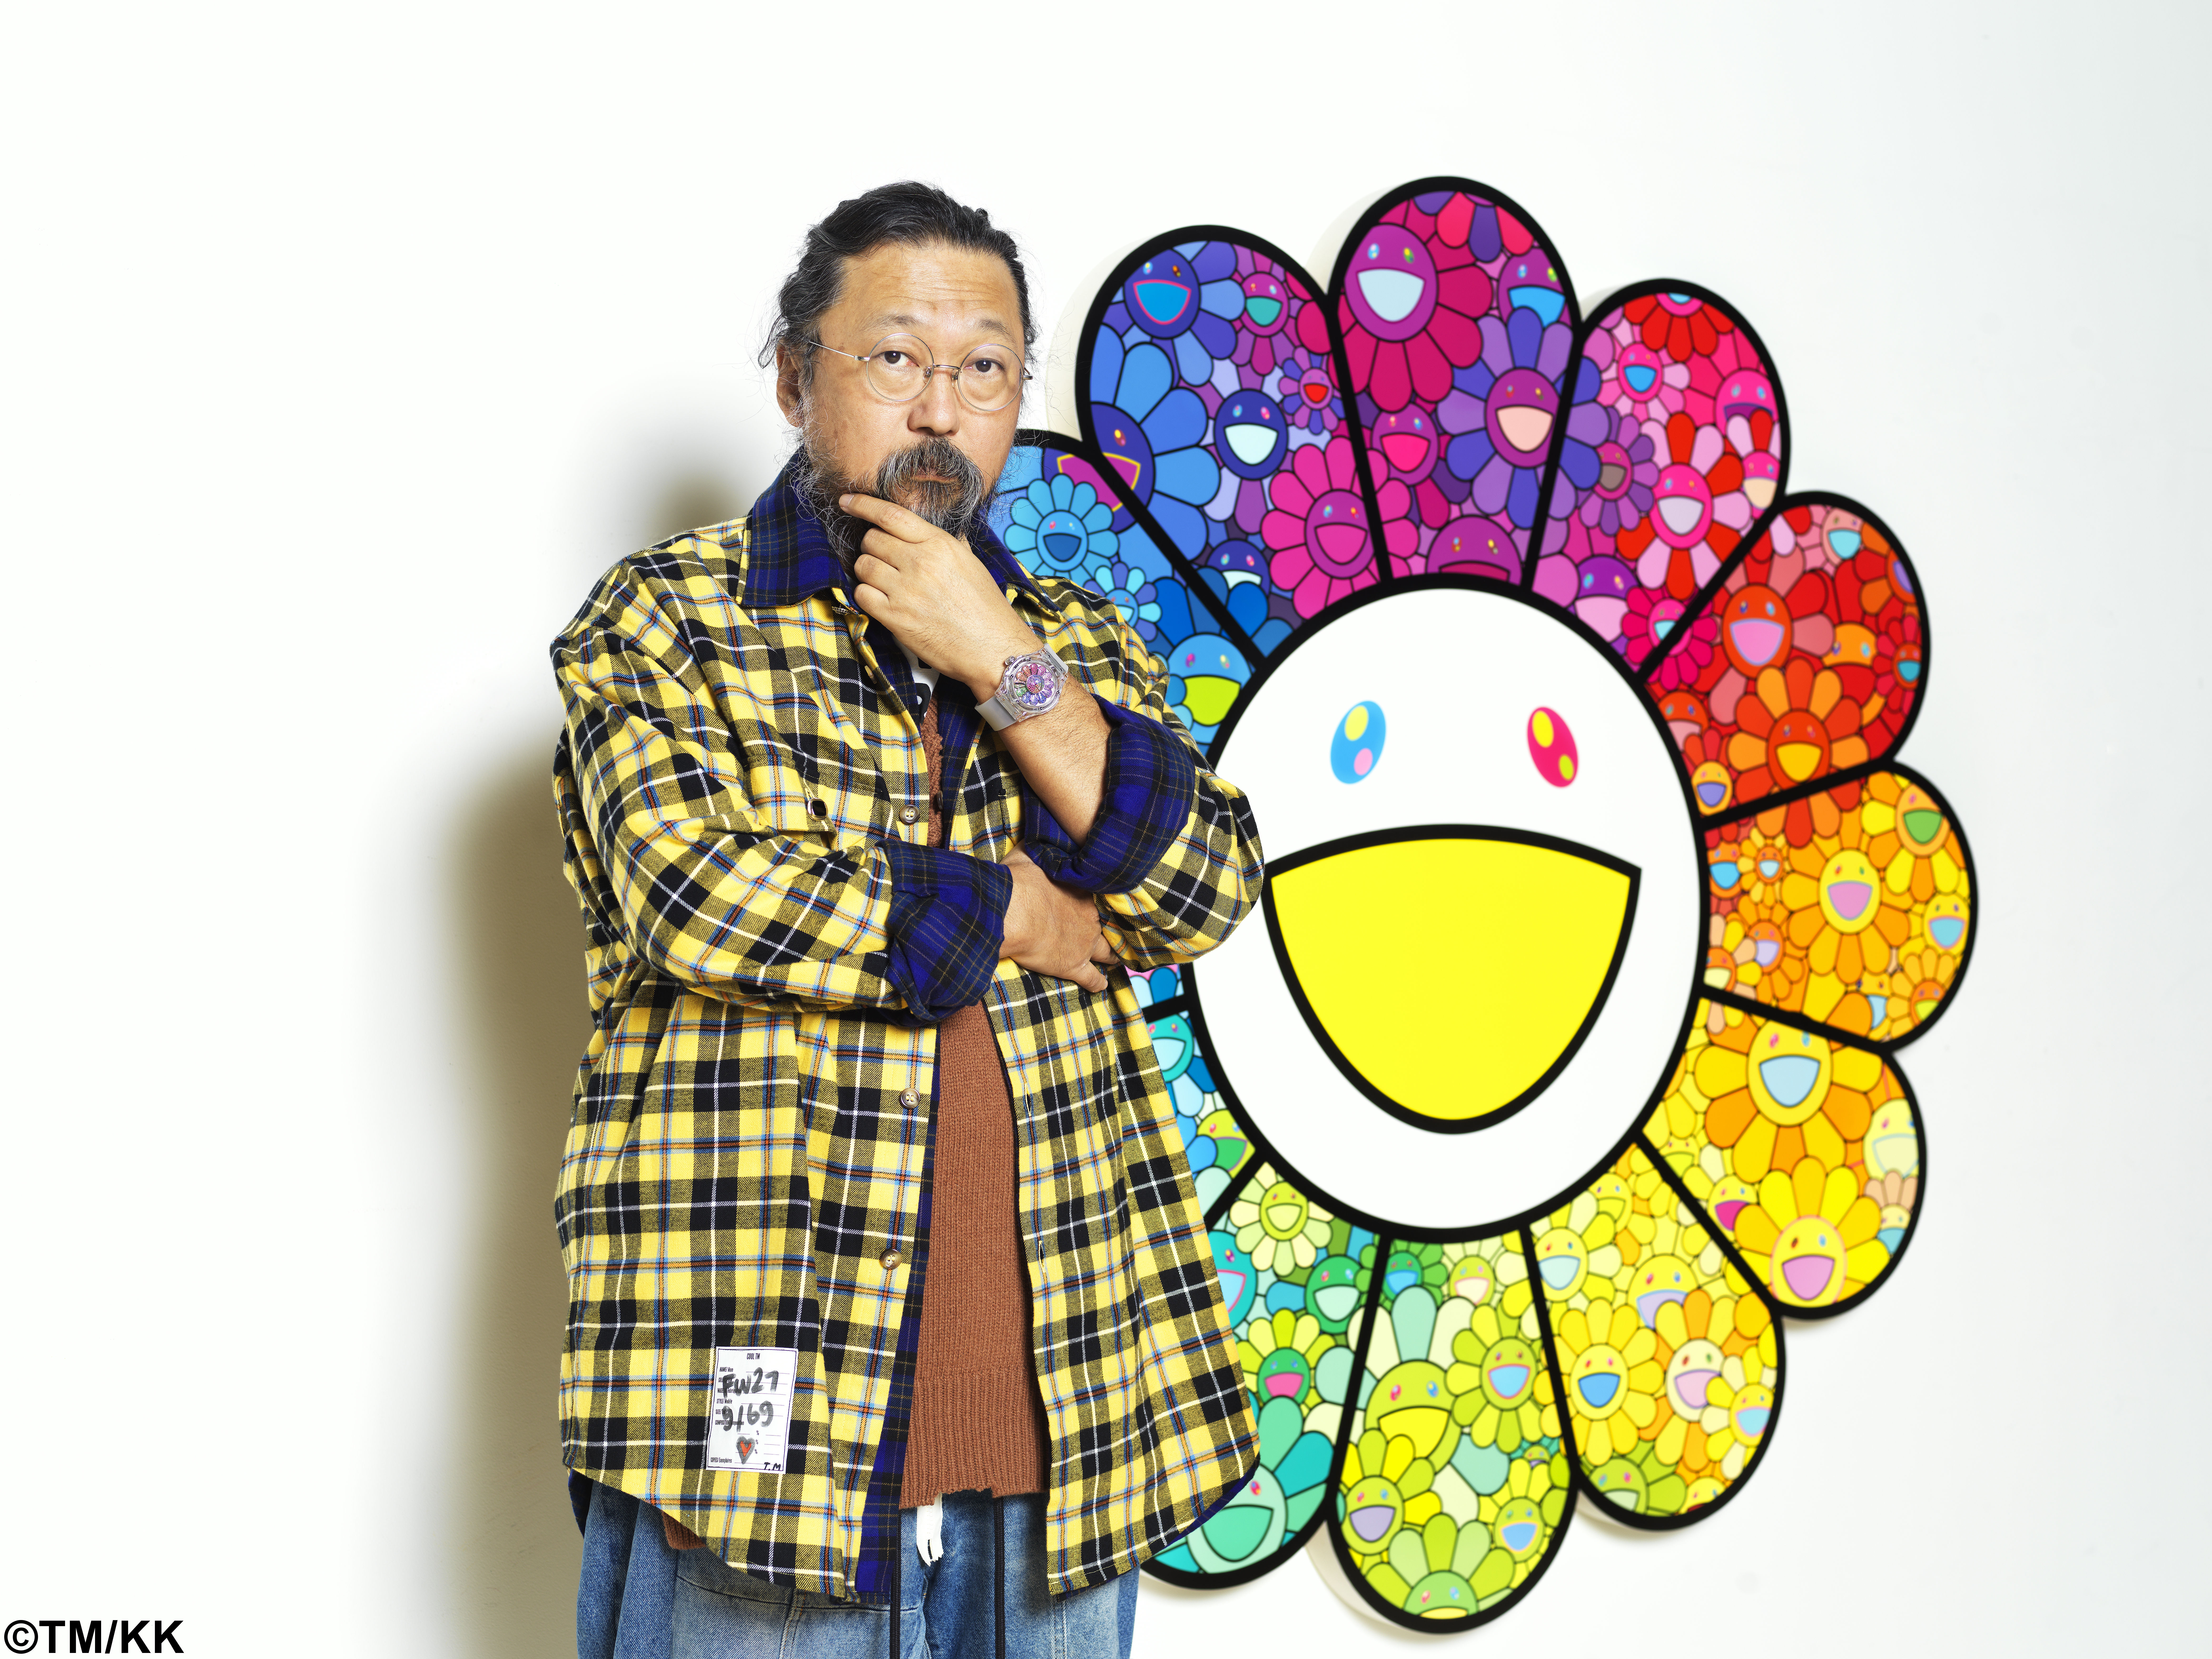 Watch of the Week: Hublot Classic Fusion Takashi Murakami Sapphire Rainbow